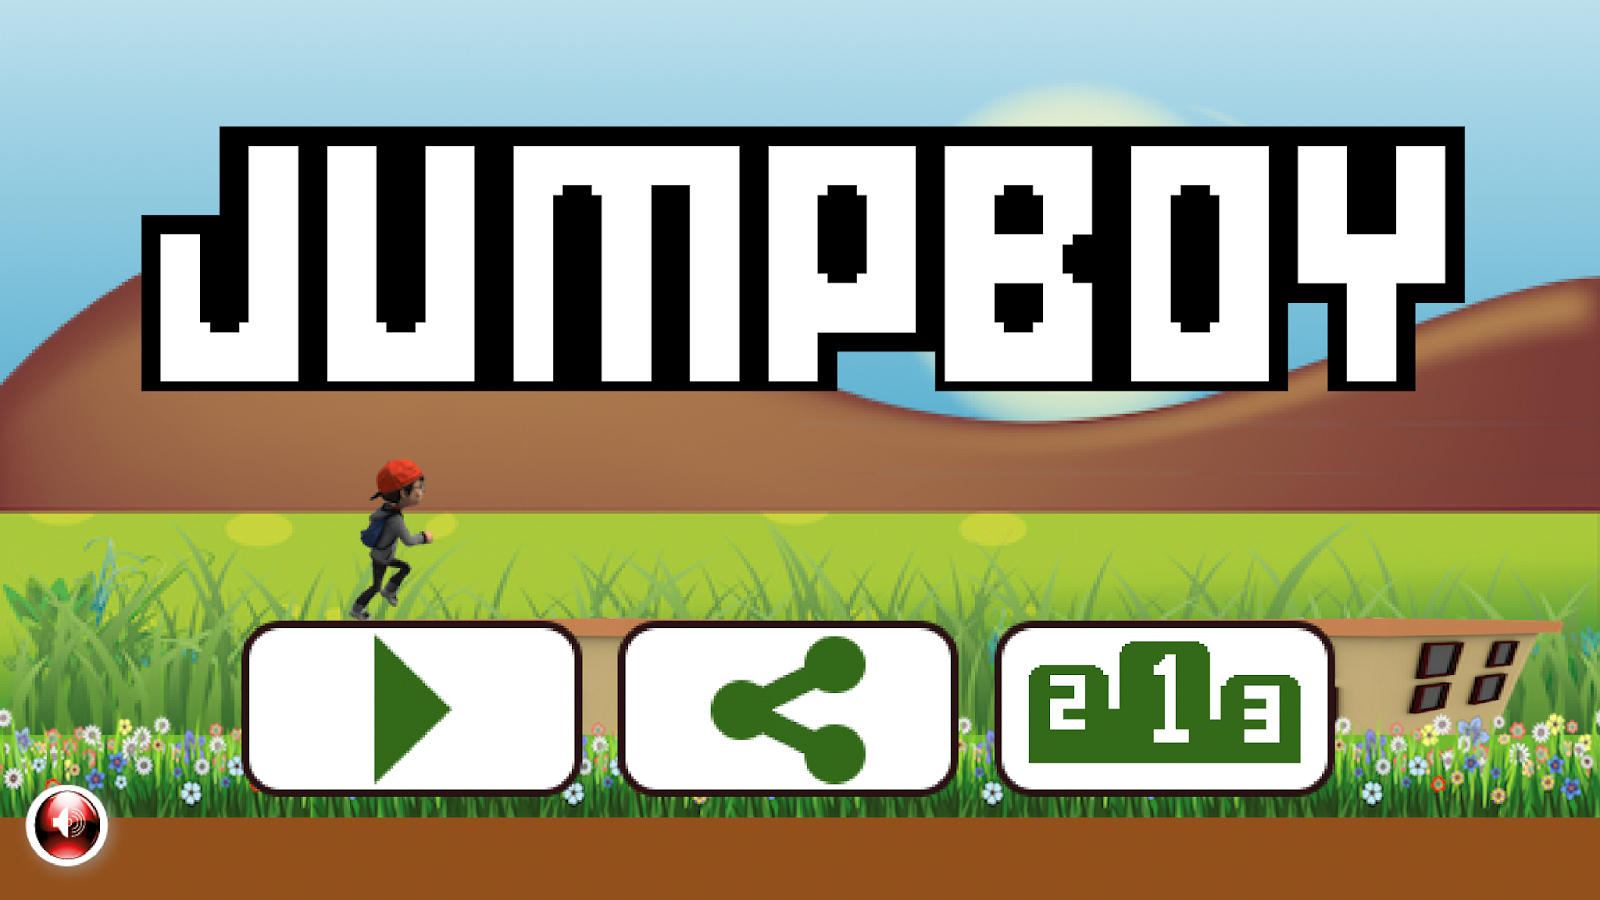 لعبة JUMPBOY - جمبوي لعبة القفزوالتحدي للوصول لاعلى رقم | بحرية درويد